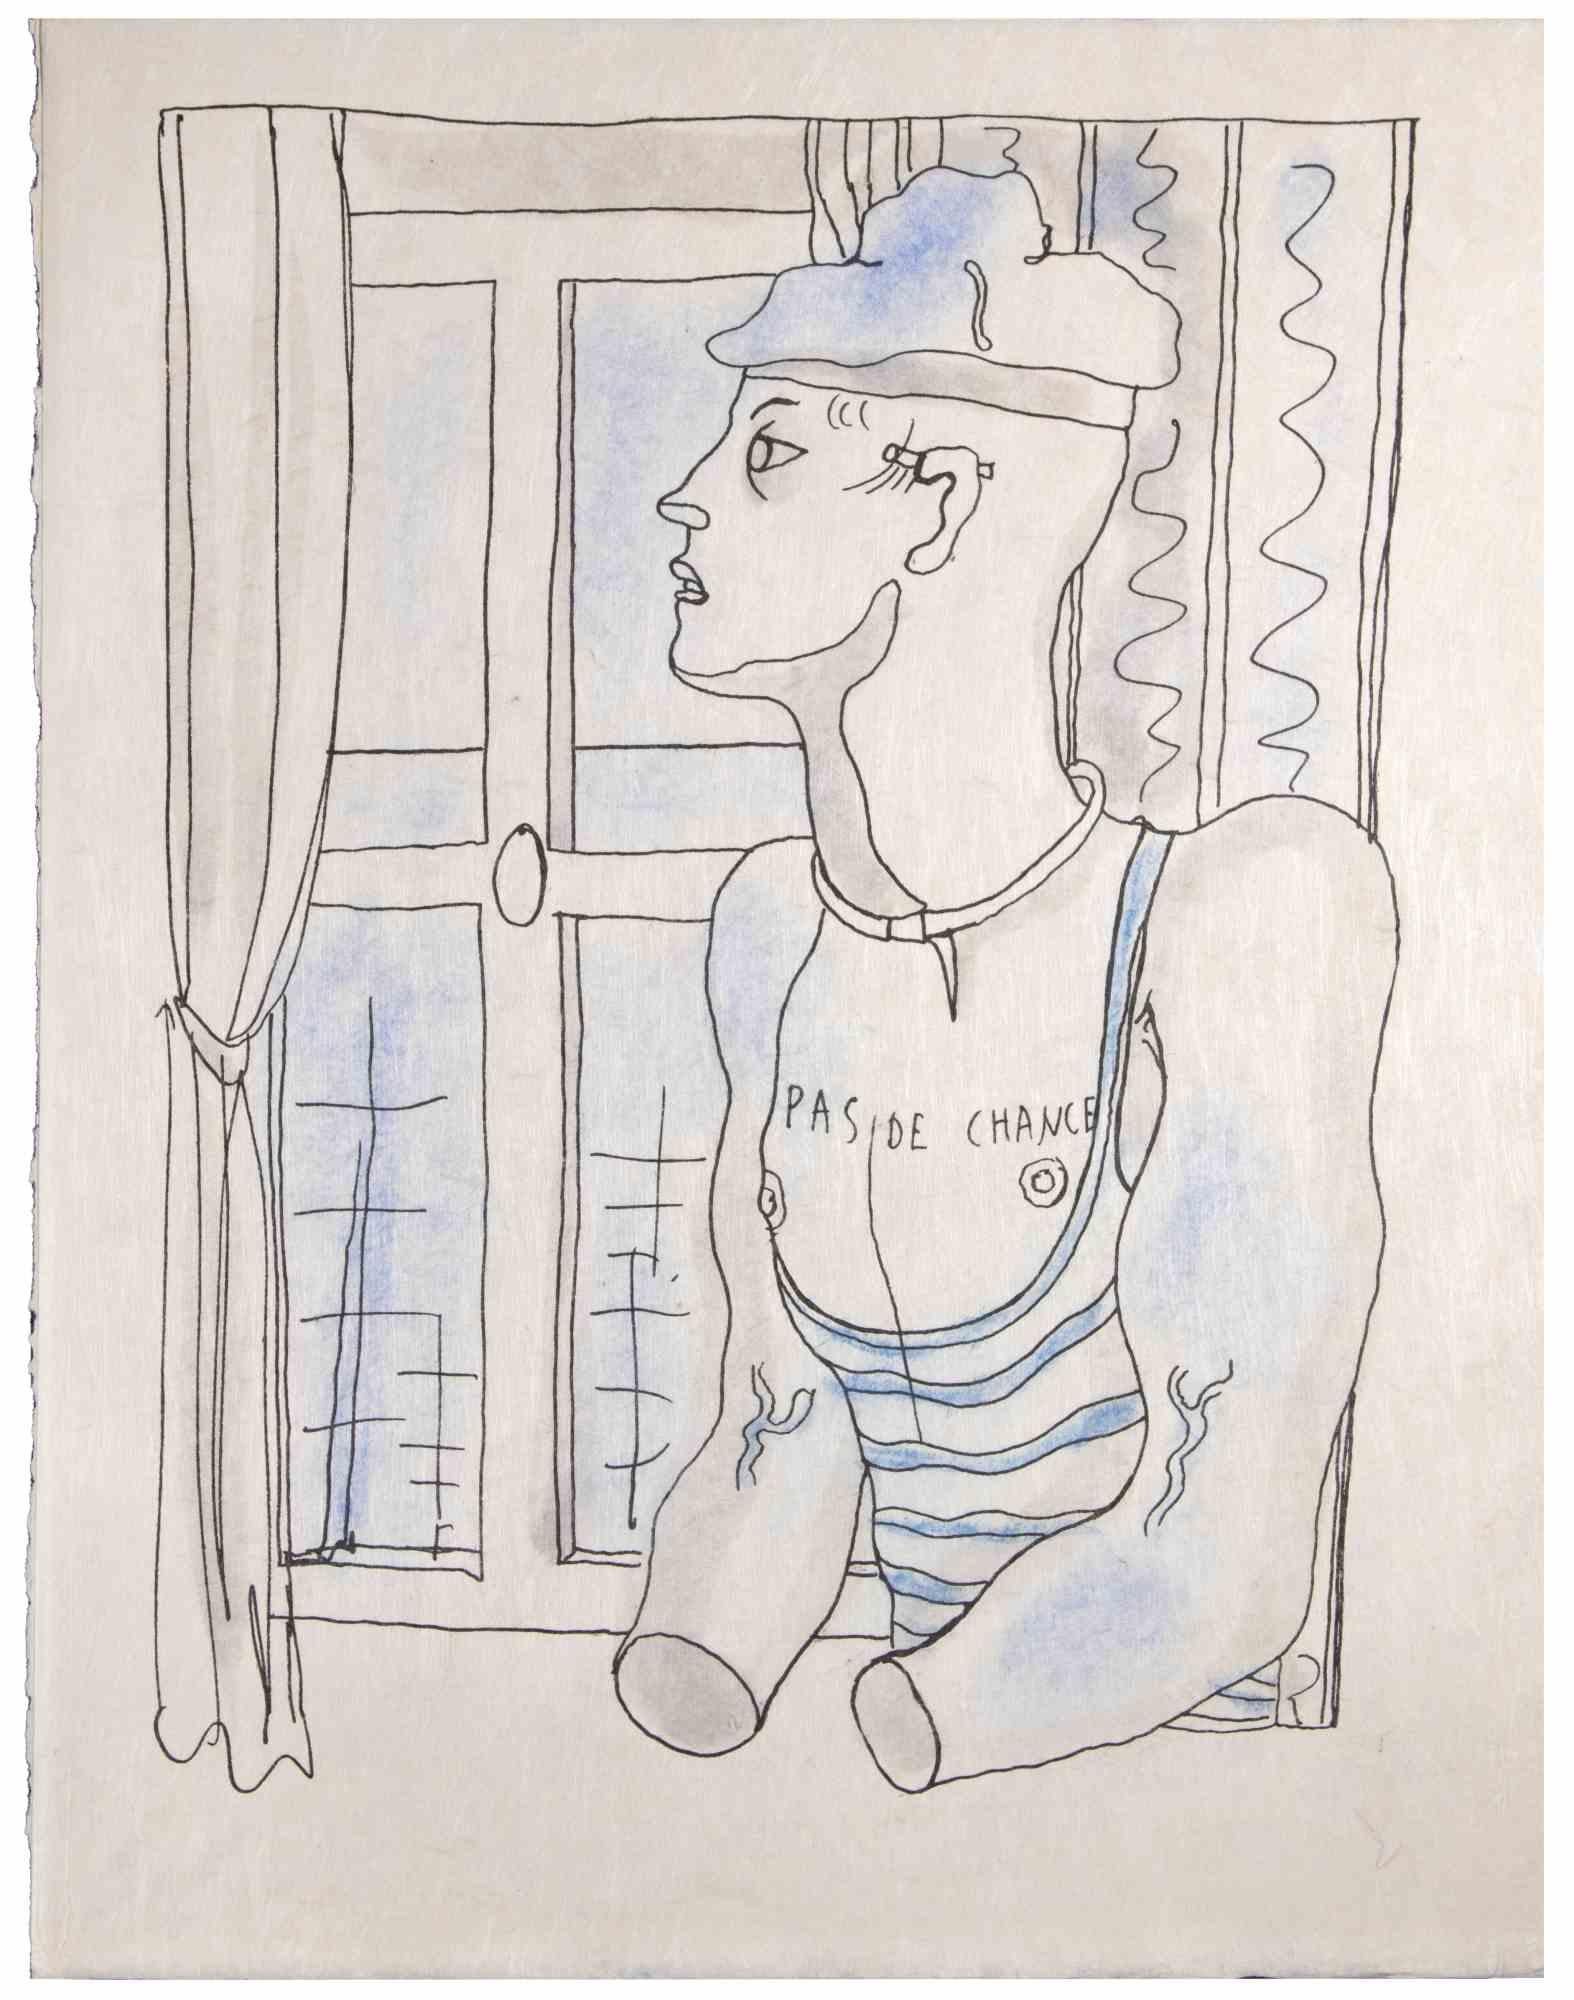 Sans espoir  est une lithographie en couleurs réalisée sur papier japonais par Jean Cocteau (1889 -1963) en 1930 env. Dessinateur, poète, essayiste, dramaturge, librettiste, réalisateur français.

Excellent état, sans signature.

L'œuvre représente